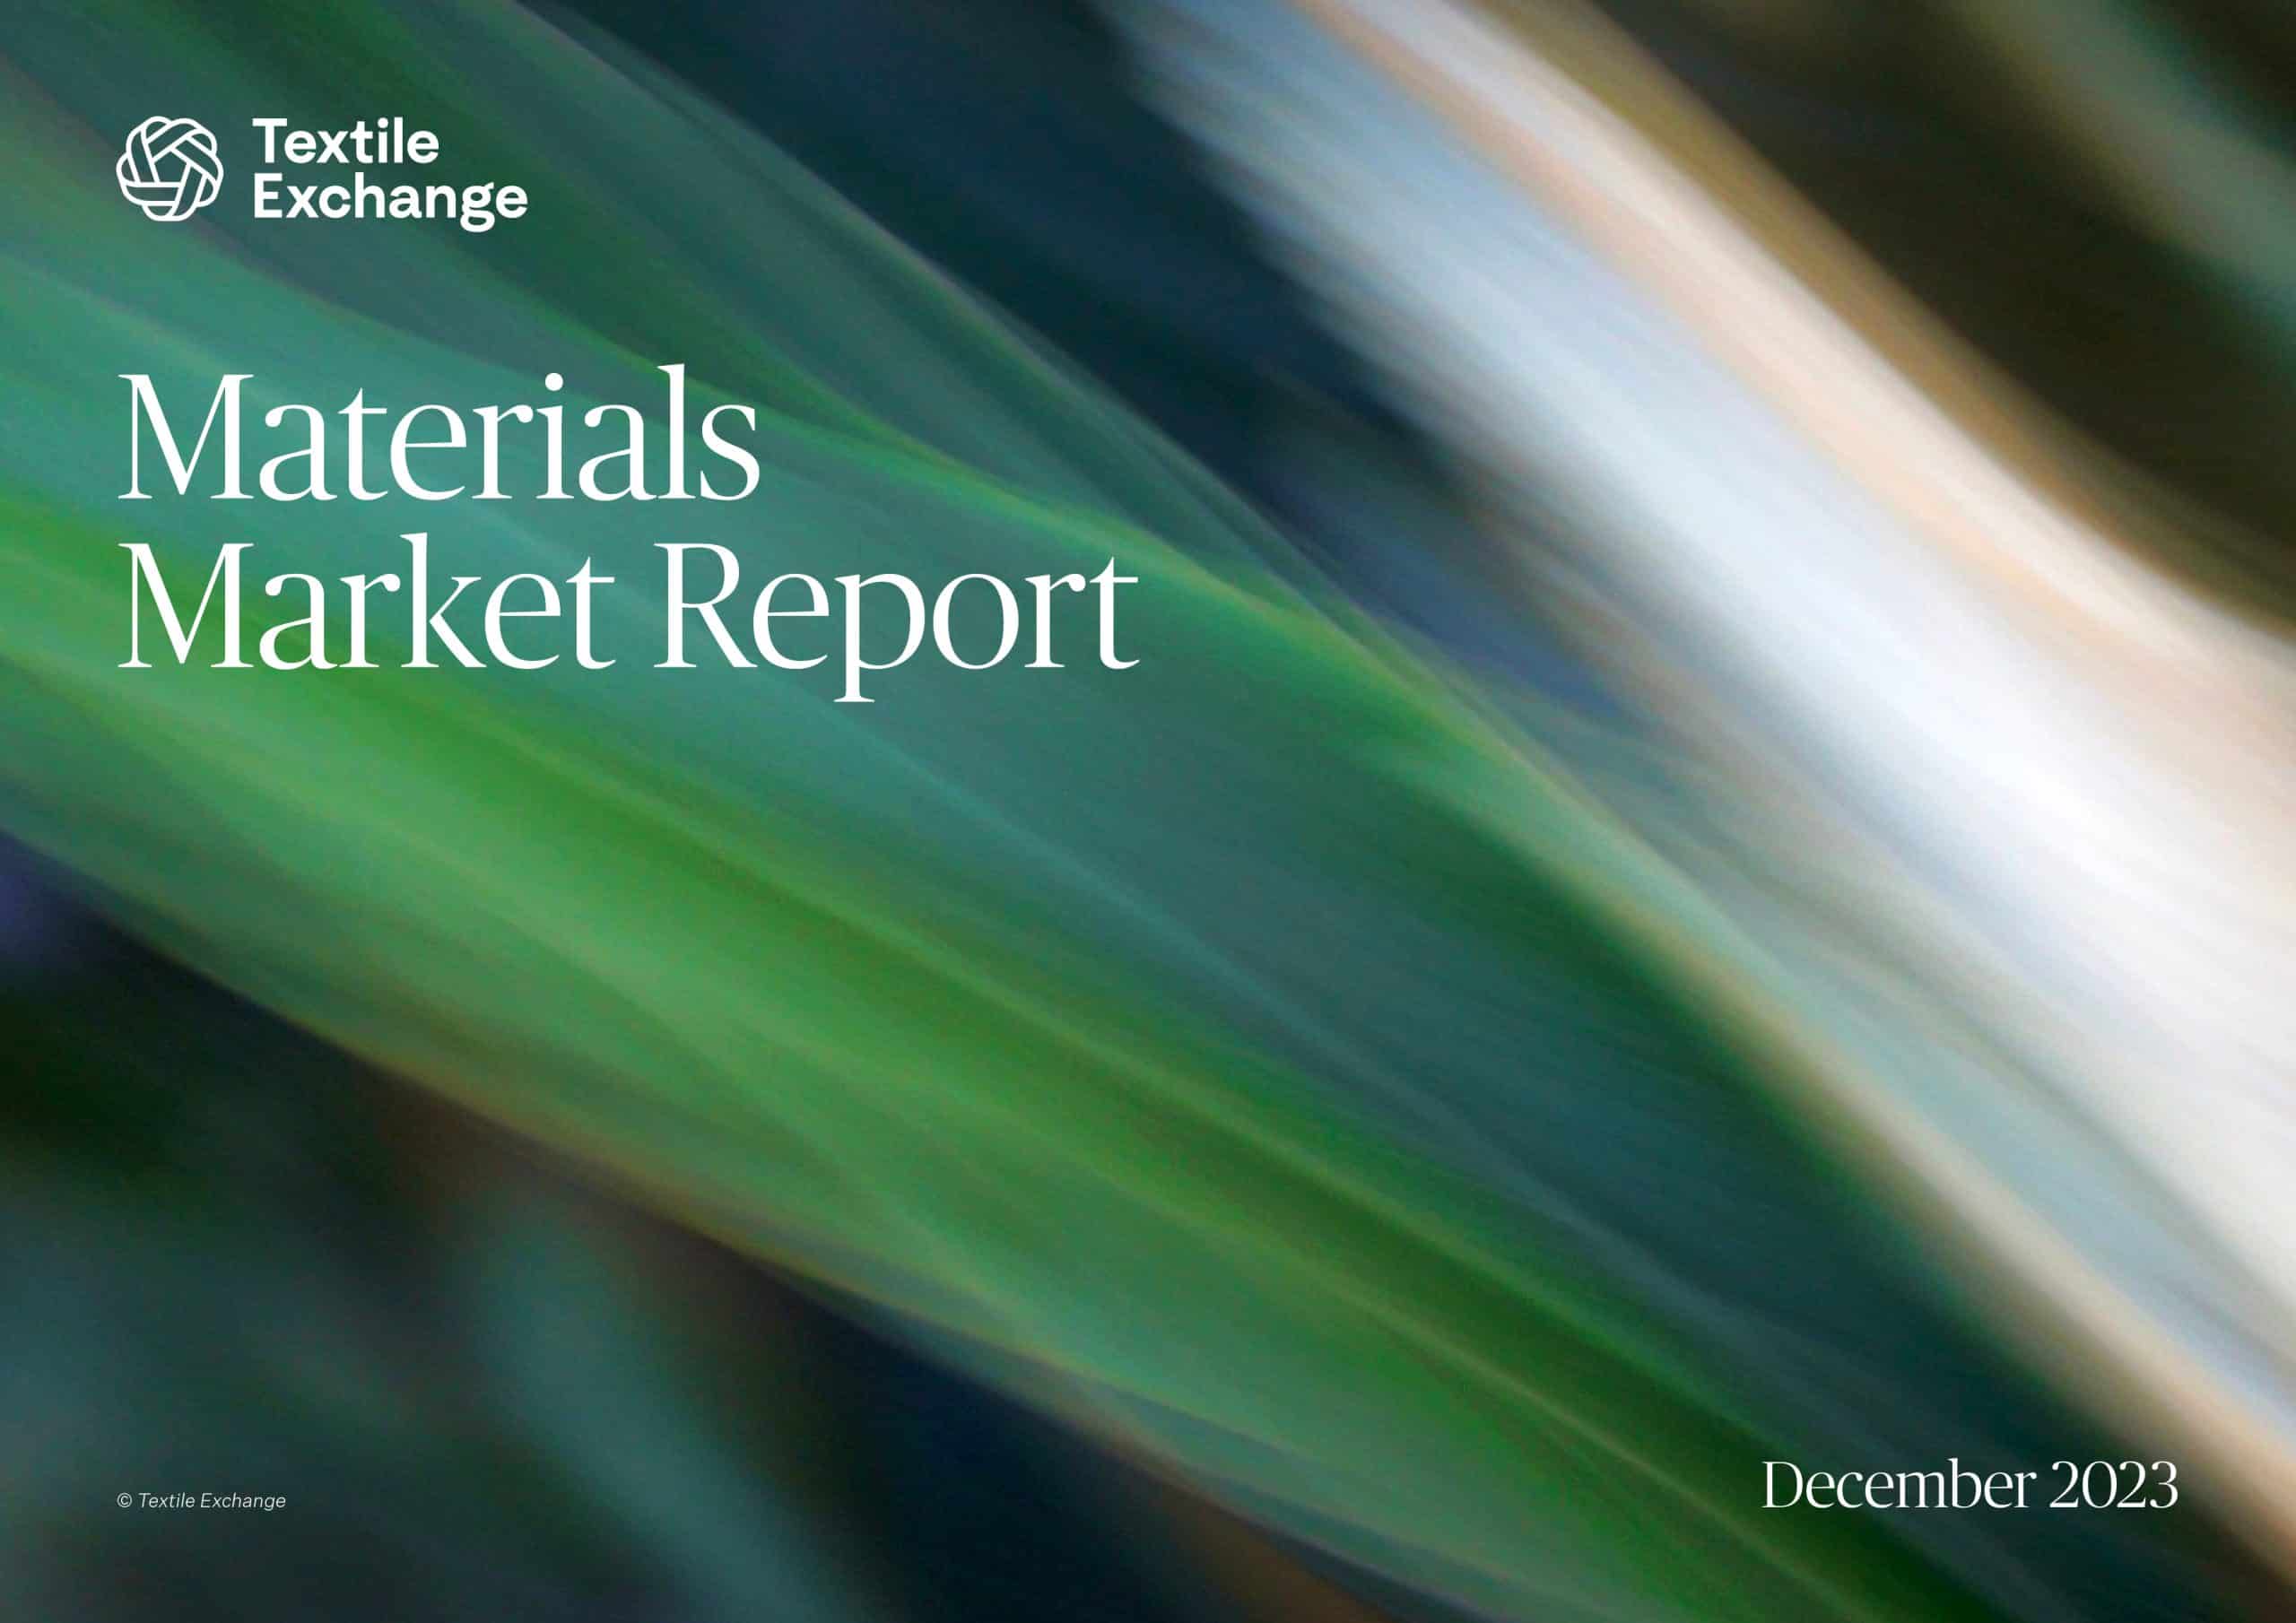 Materials Market Report 2023 - Textile Exchange